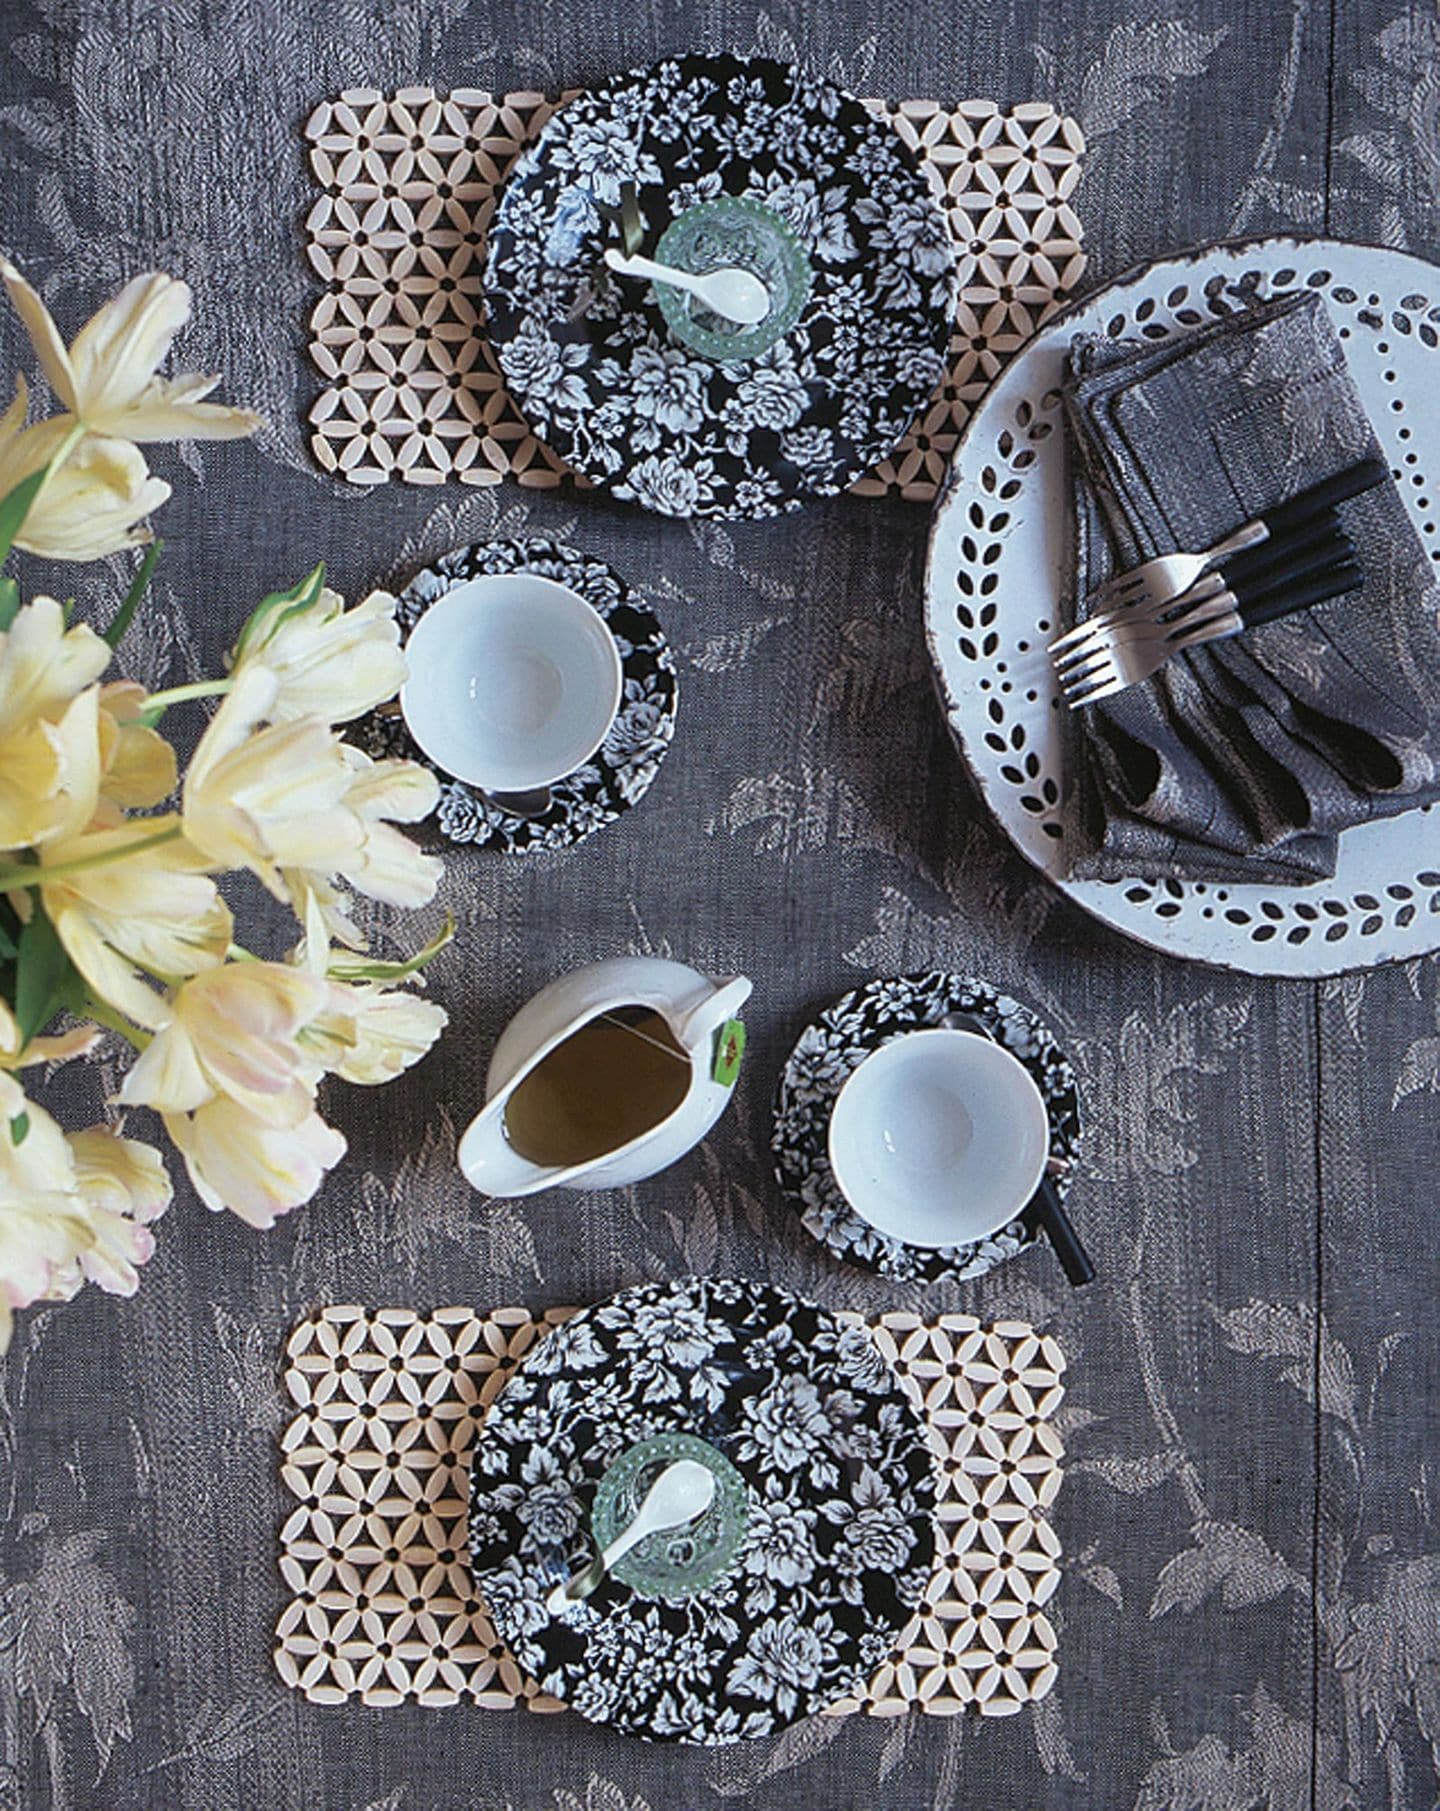 Porzellangeschirr, Tischsets und tischdecke mit Blumenmuster in Grau